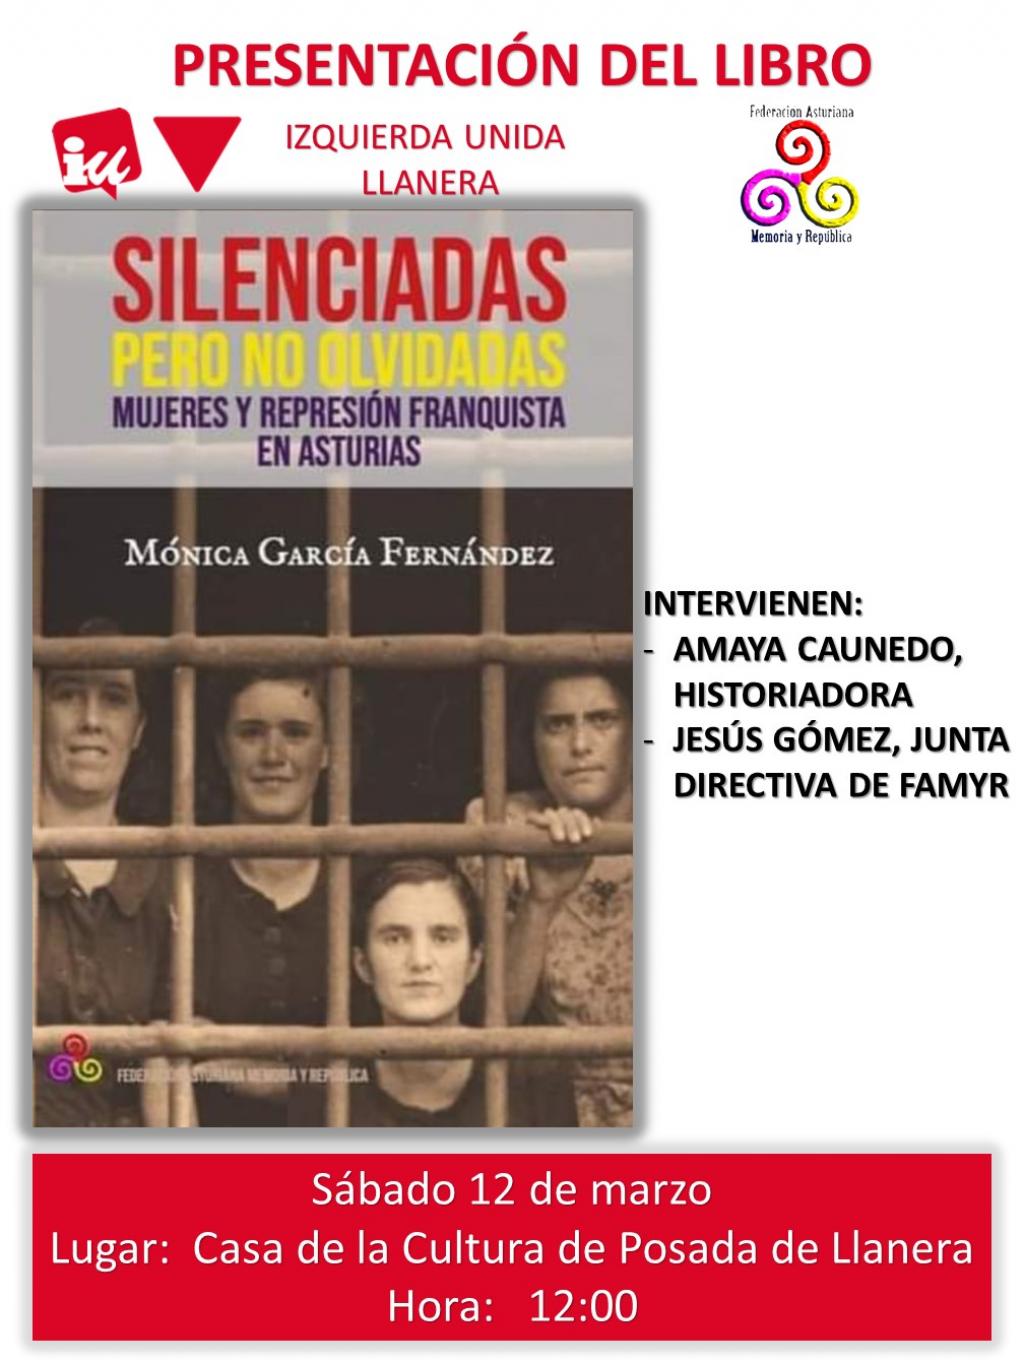 El Tapin - IU Llanera organiza la presentación del libro “Silenciadas pero no olvidadas. Mujeres y represión franquista” en la Casa de Cultura de Posada el sábado 12 de marzo